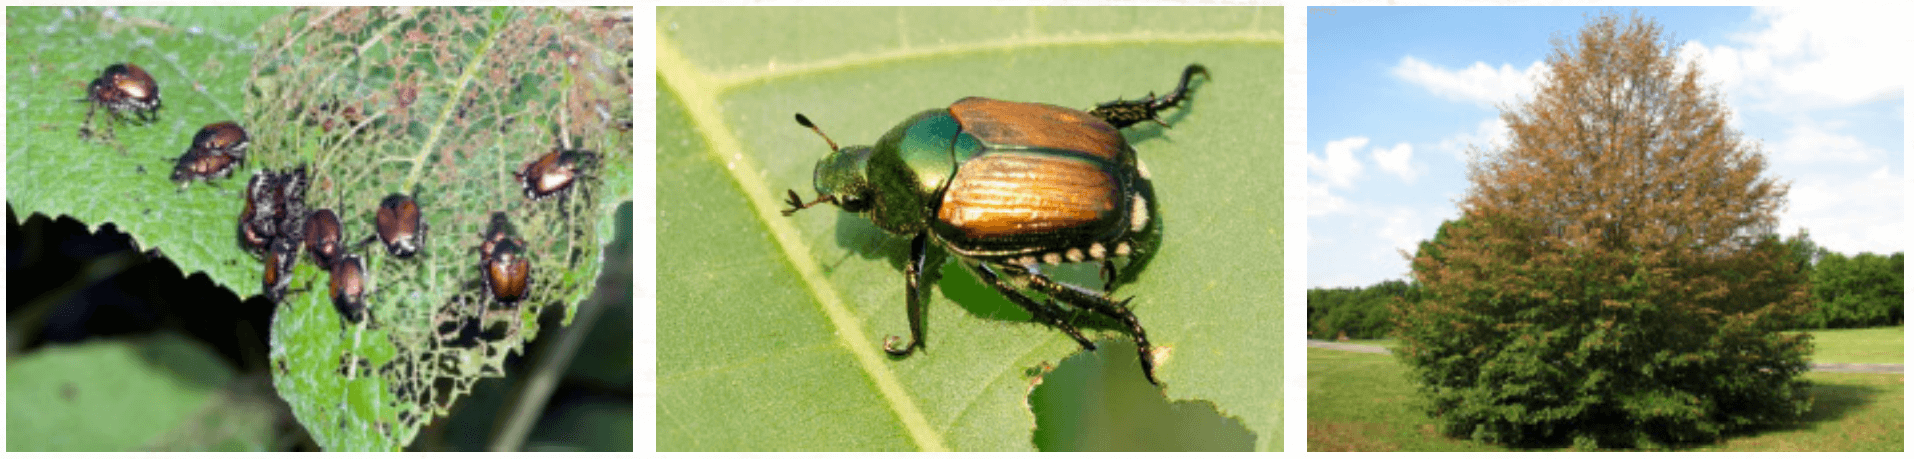 Japanese Beetles